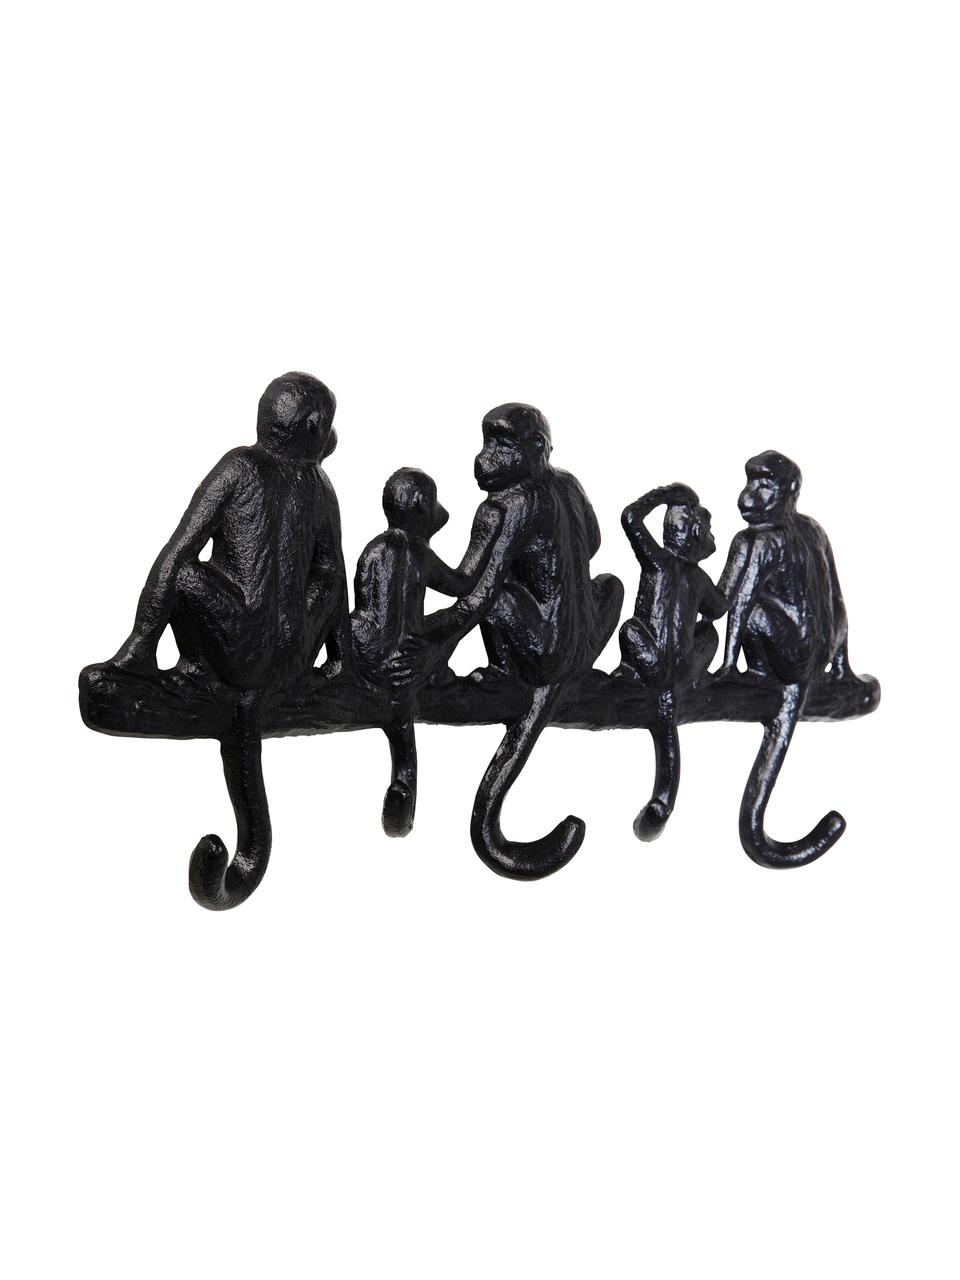 Garderobenleiste Monkey in Schwarz, Metall, pulverbeschichtet, Schwarz, B 31 x H 14 cm